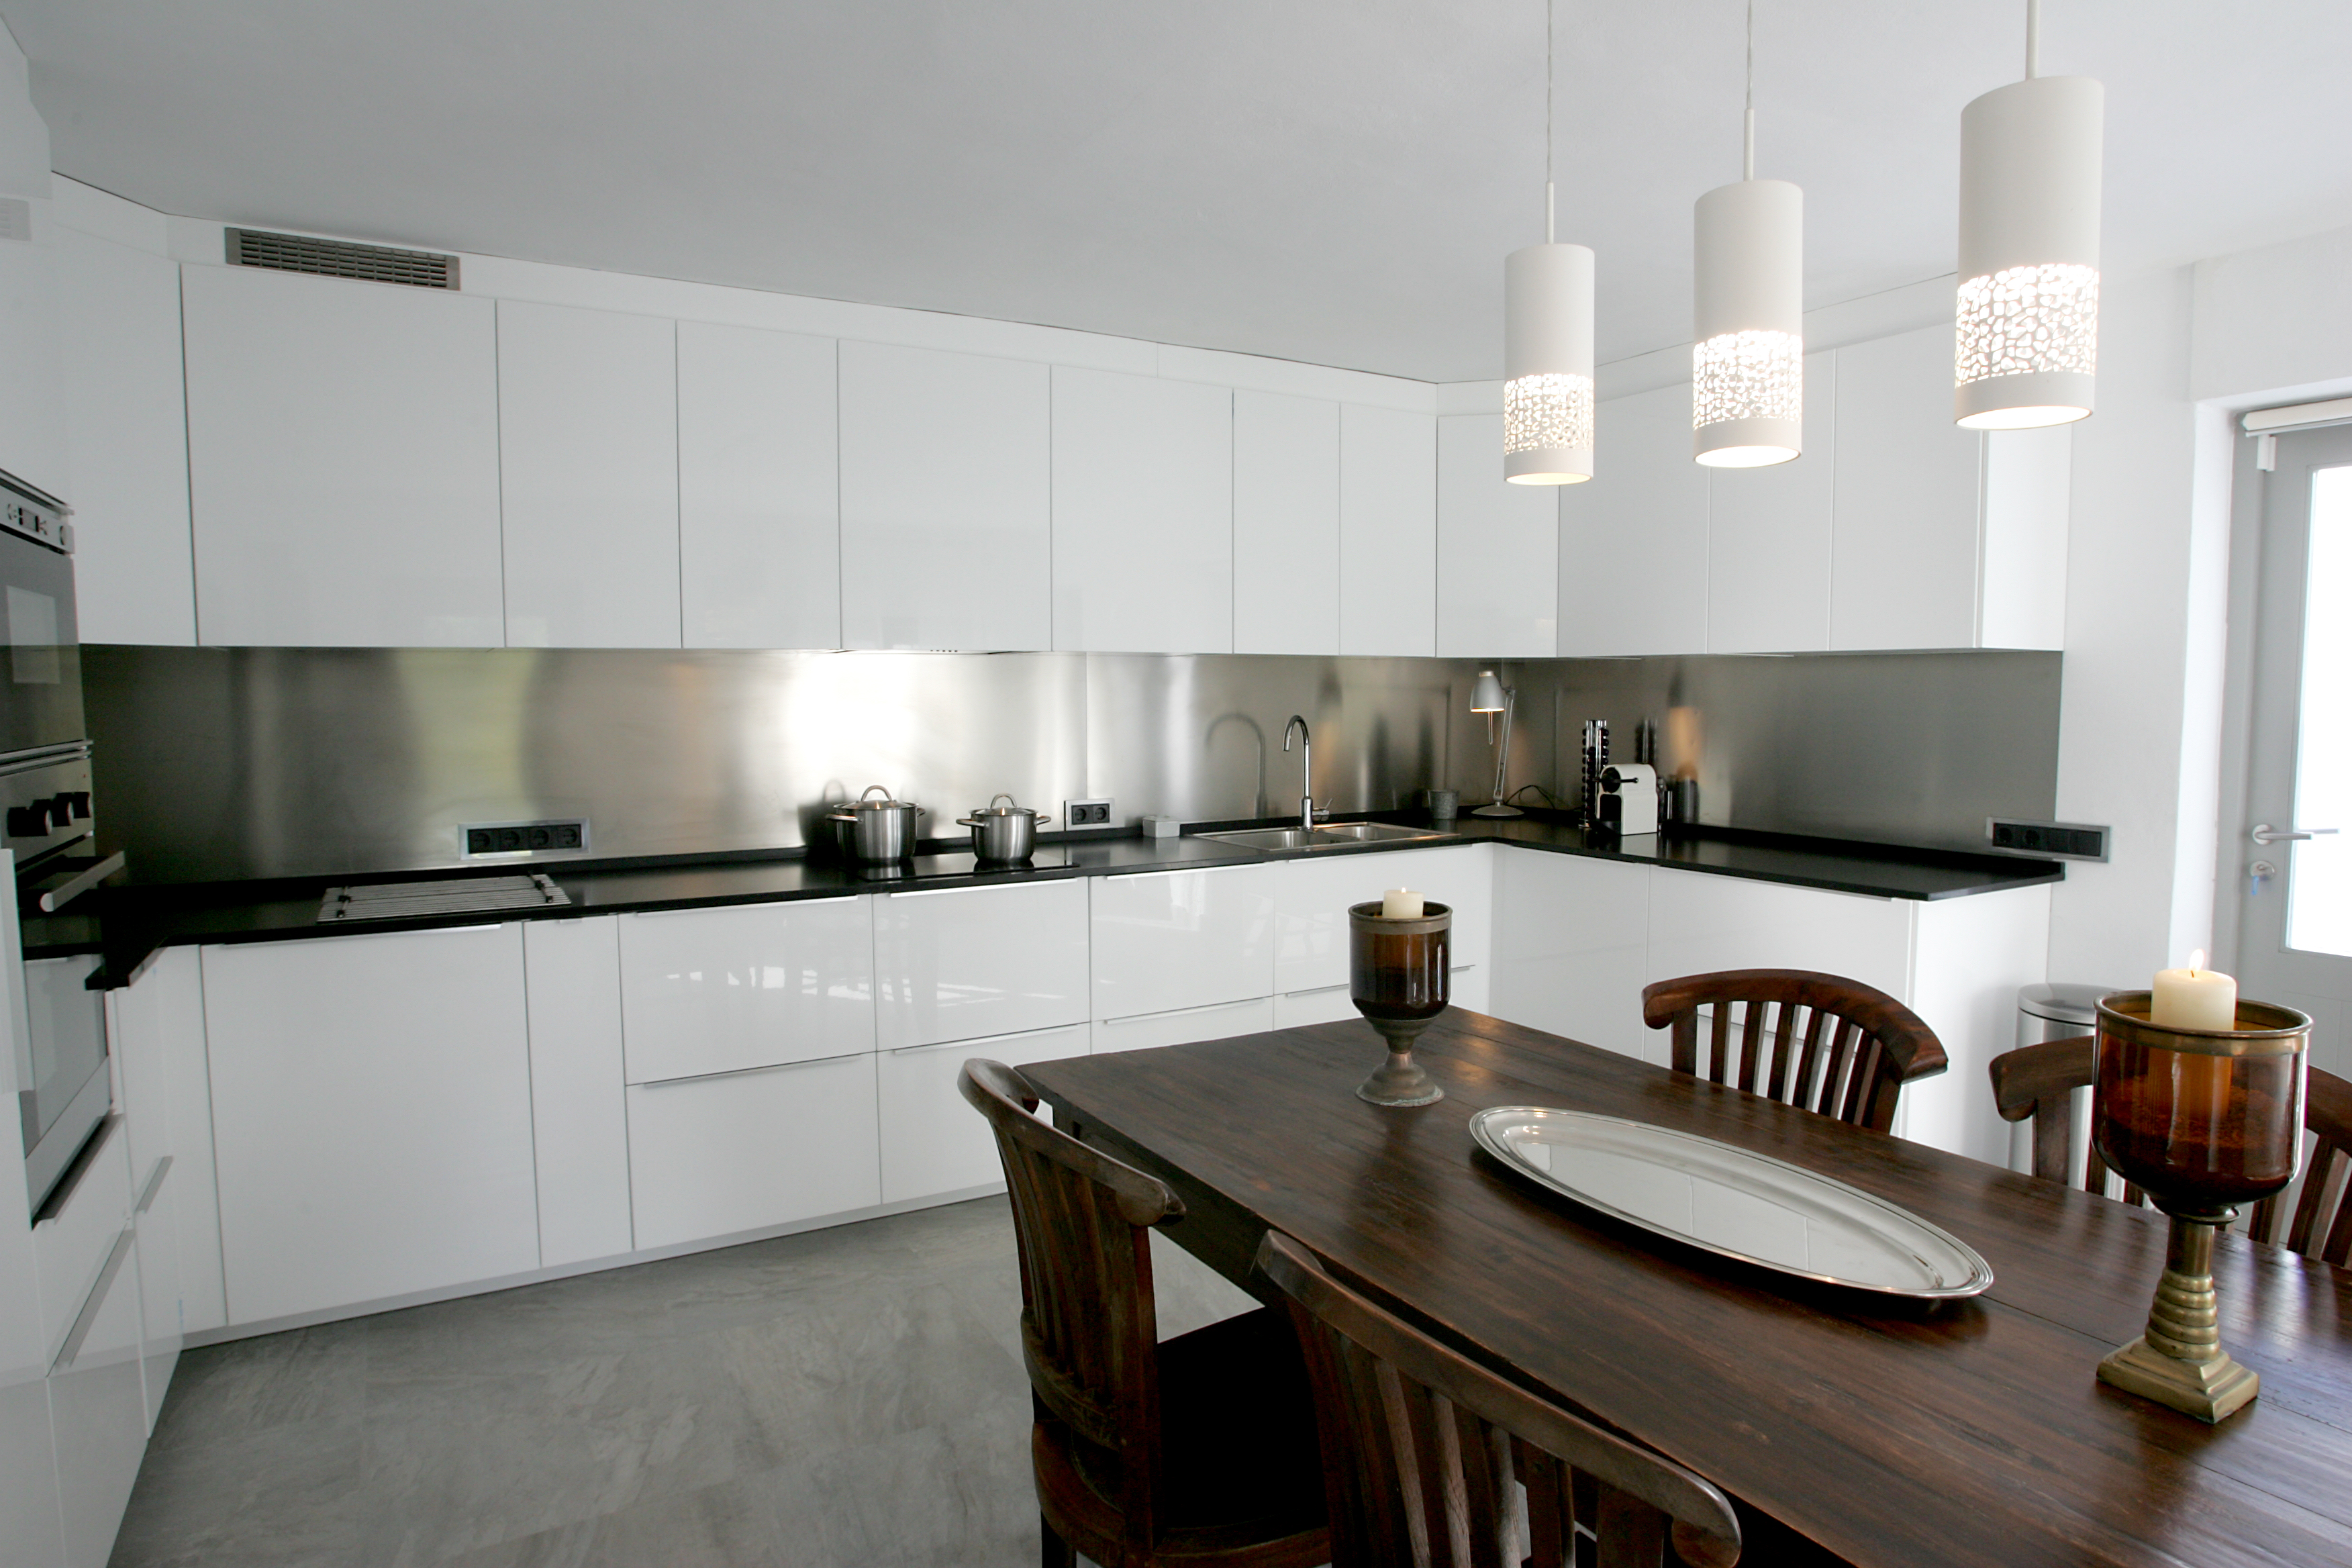 resa estates rental villa 2022 low prices license nederland ibiza can marlin kitchen 2.JPG